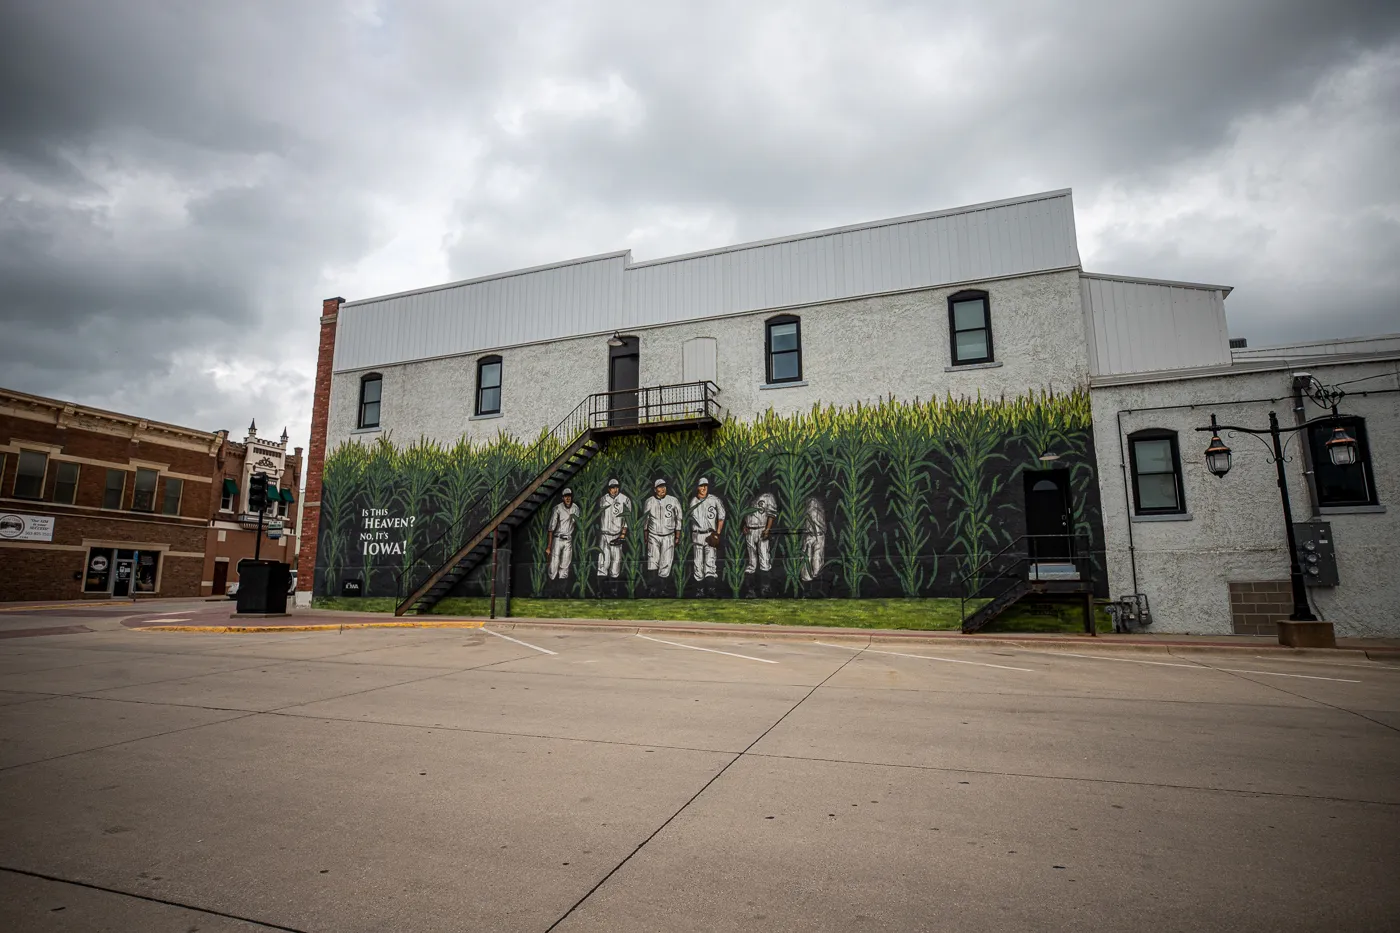 Field of Dreams mural in Dyersville, Iowa